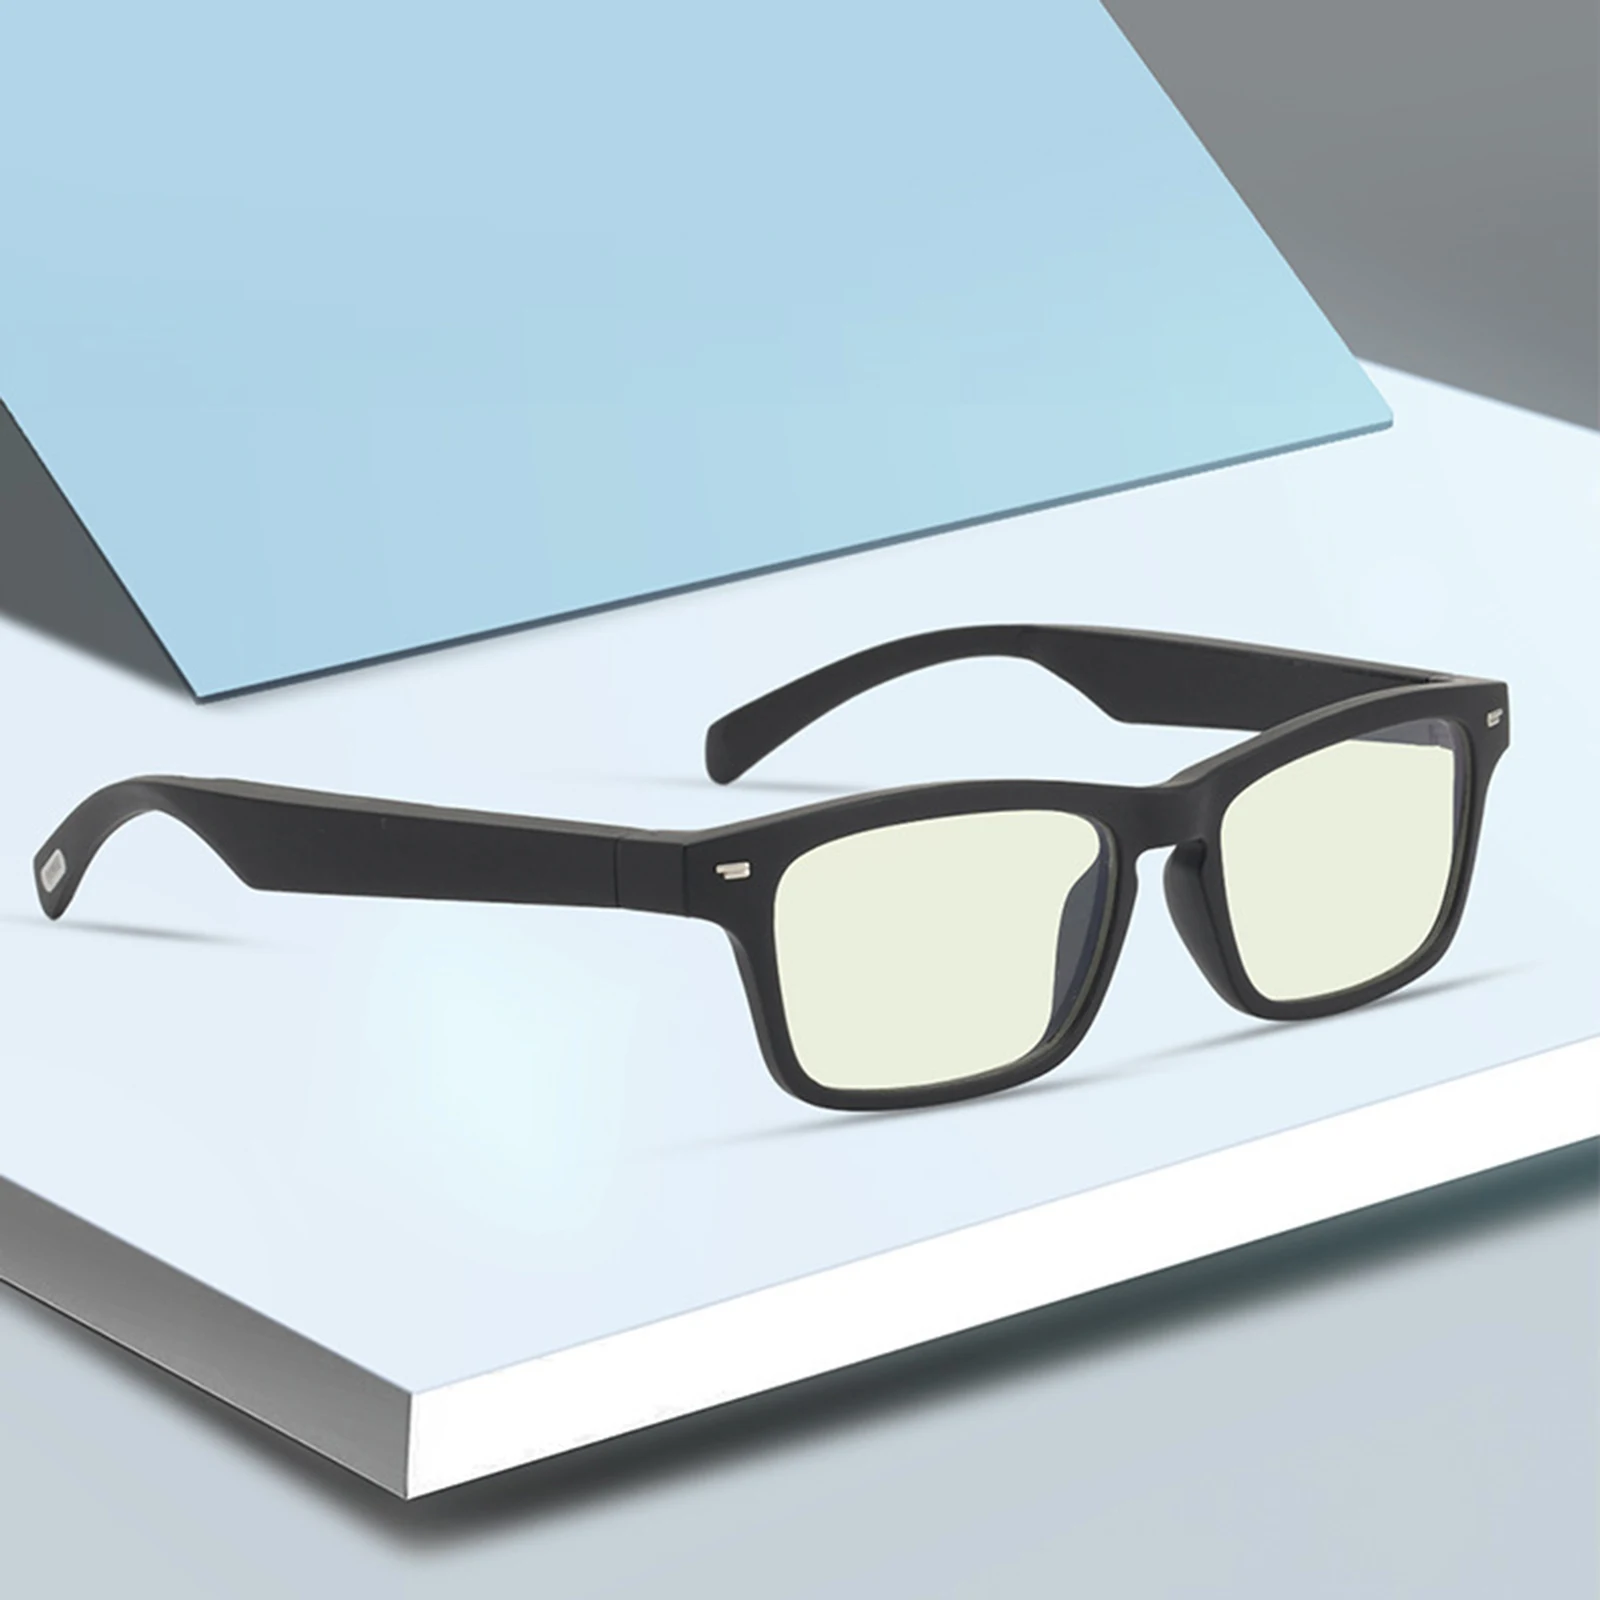 저렴한 오픈 이어 헤드폰 오디오 선글라스, 방수 BT5.0 스마트 스테레오 오디오 안경, 방수 터치 스마트 블루투스 안경